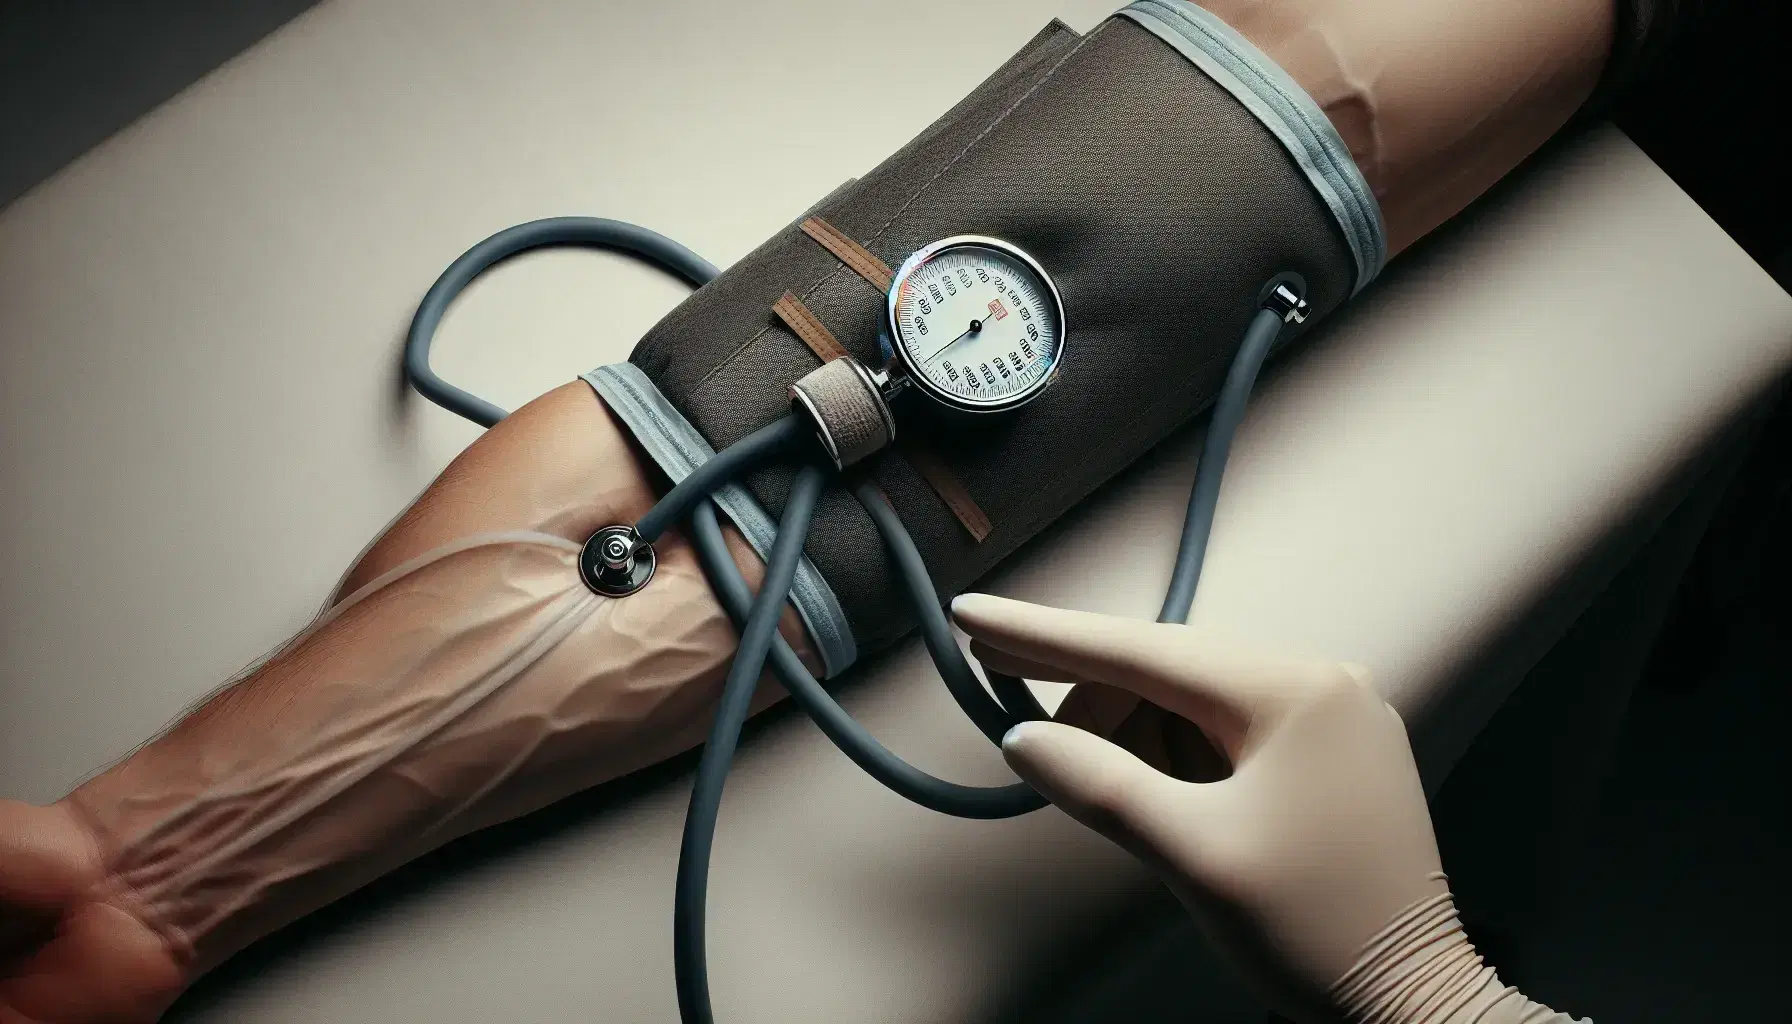 Brazo humano con manguito de tensiómetro inflado y profesional de la salud midiendo la presión arterial palpando la arteria radial.